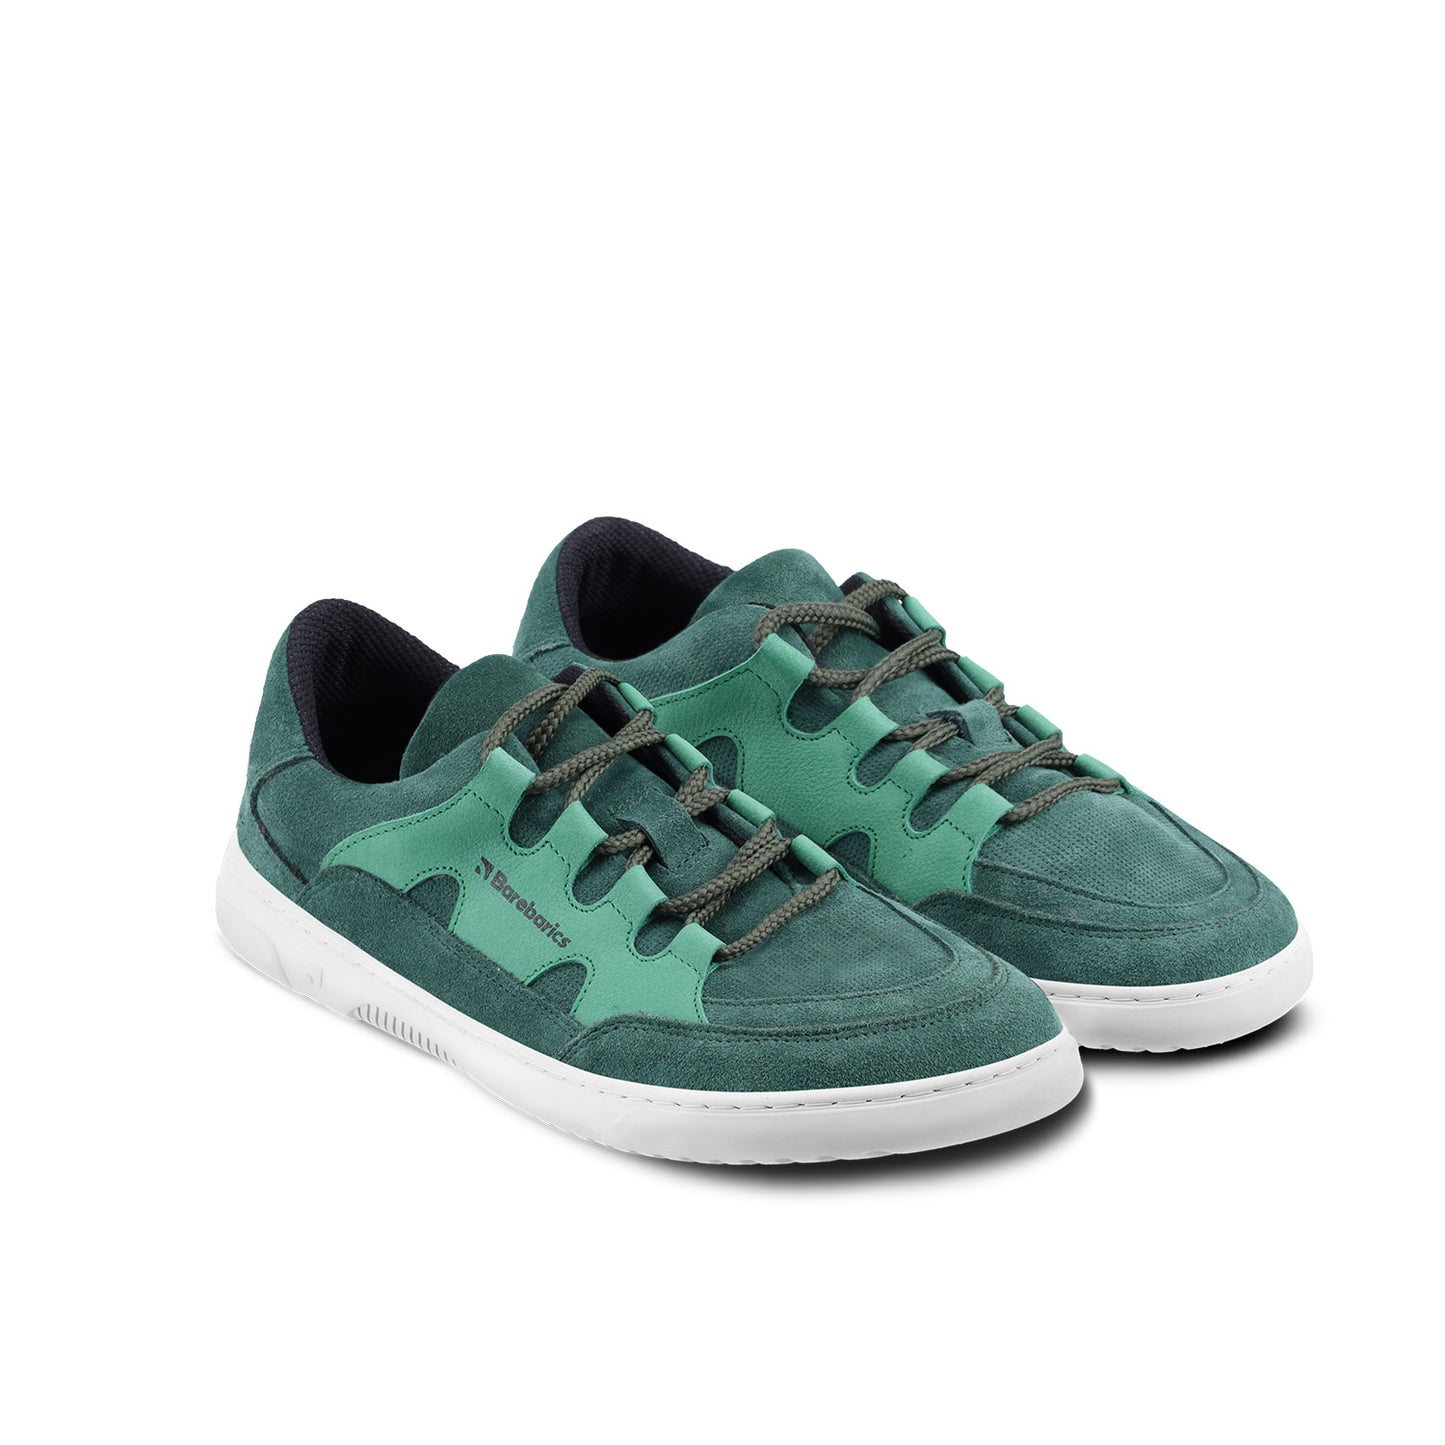 Barefoot Sneakers Barebarics Evo - Dark Green & White 3 OzBarefoot Australia